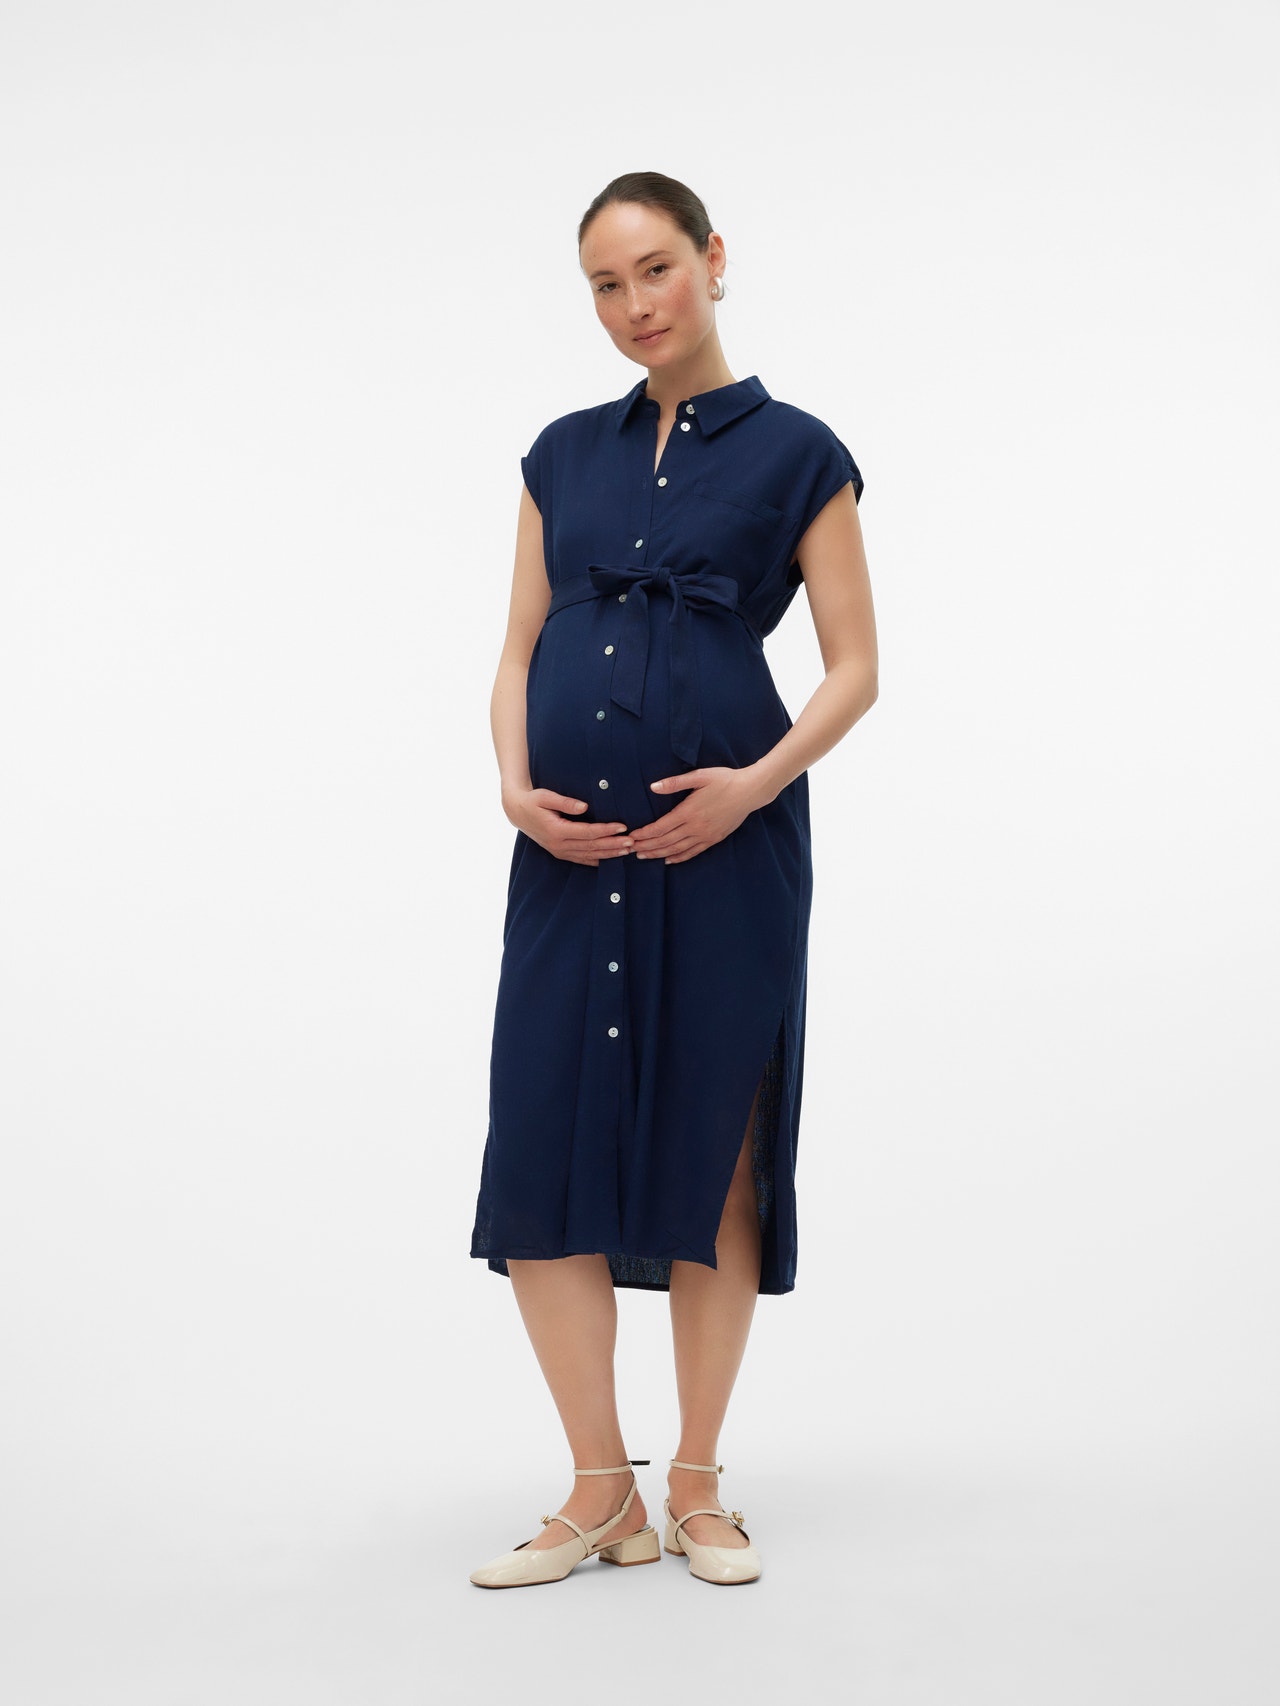 MAMA.LICIOUS Maternity-dress -Navy Blazer - 20020484